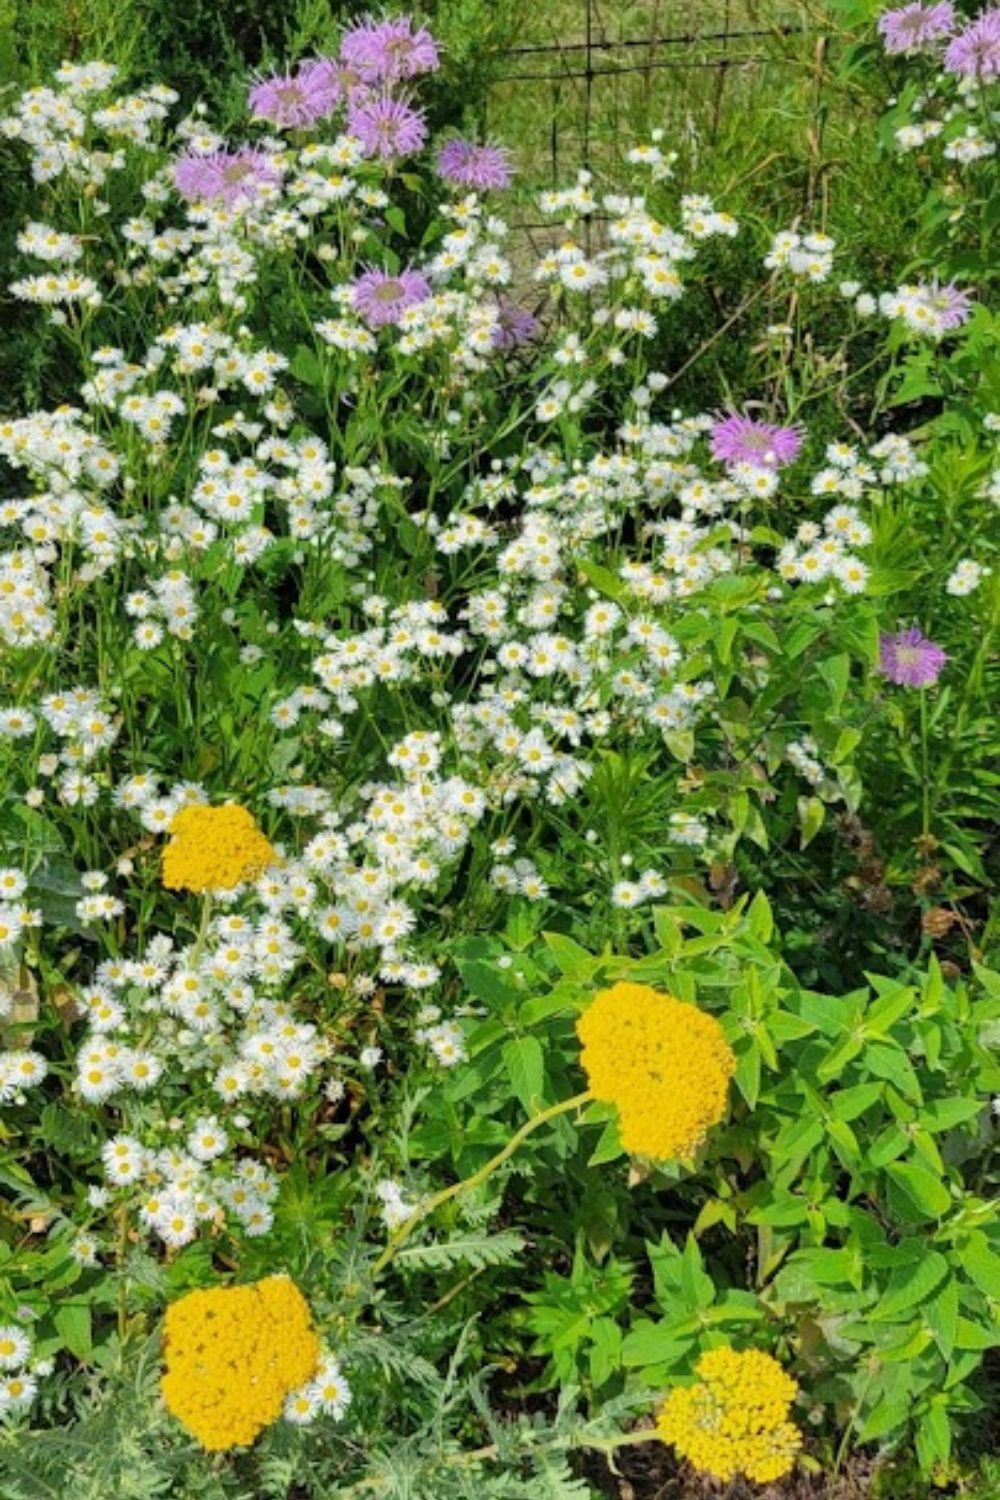 fleabane daisies, fern leaf yarrow and purple monarda